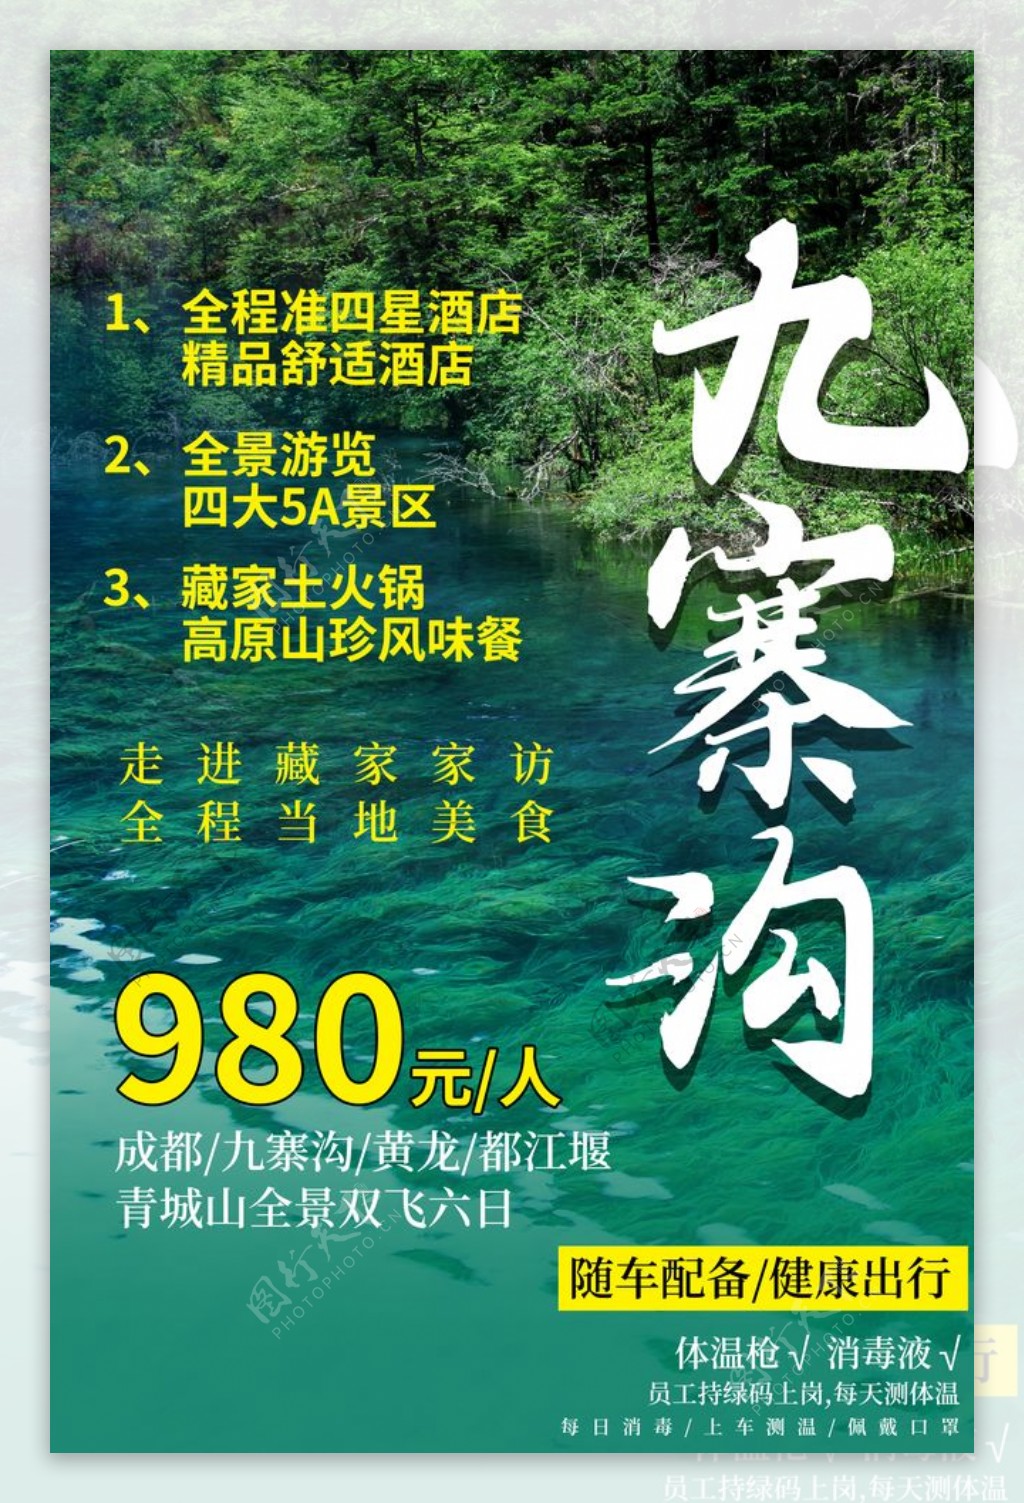 九寨沟旅游景点宣传活动海报